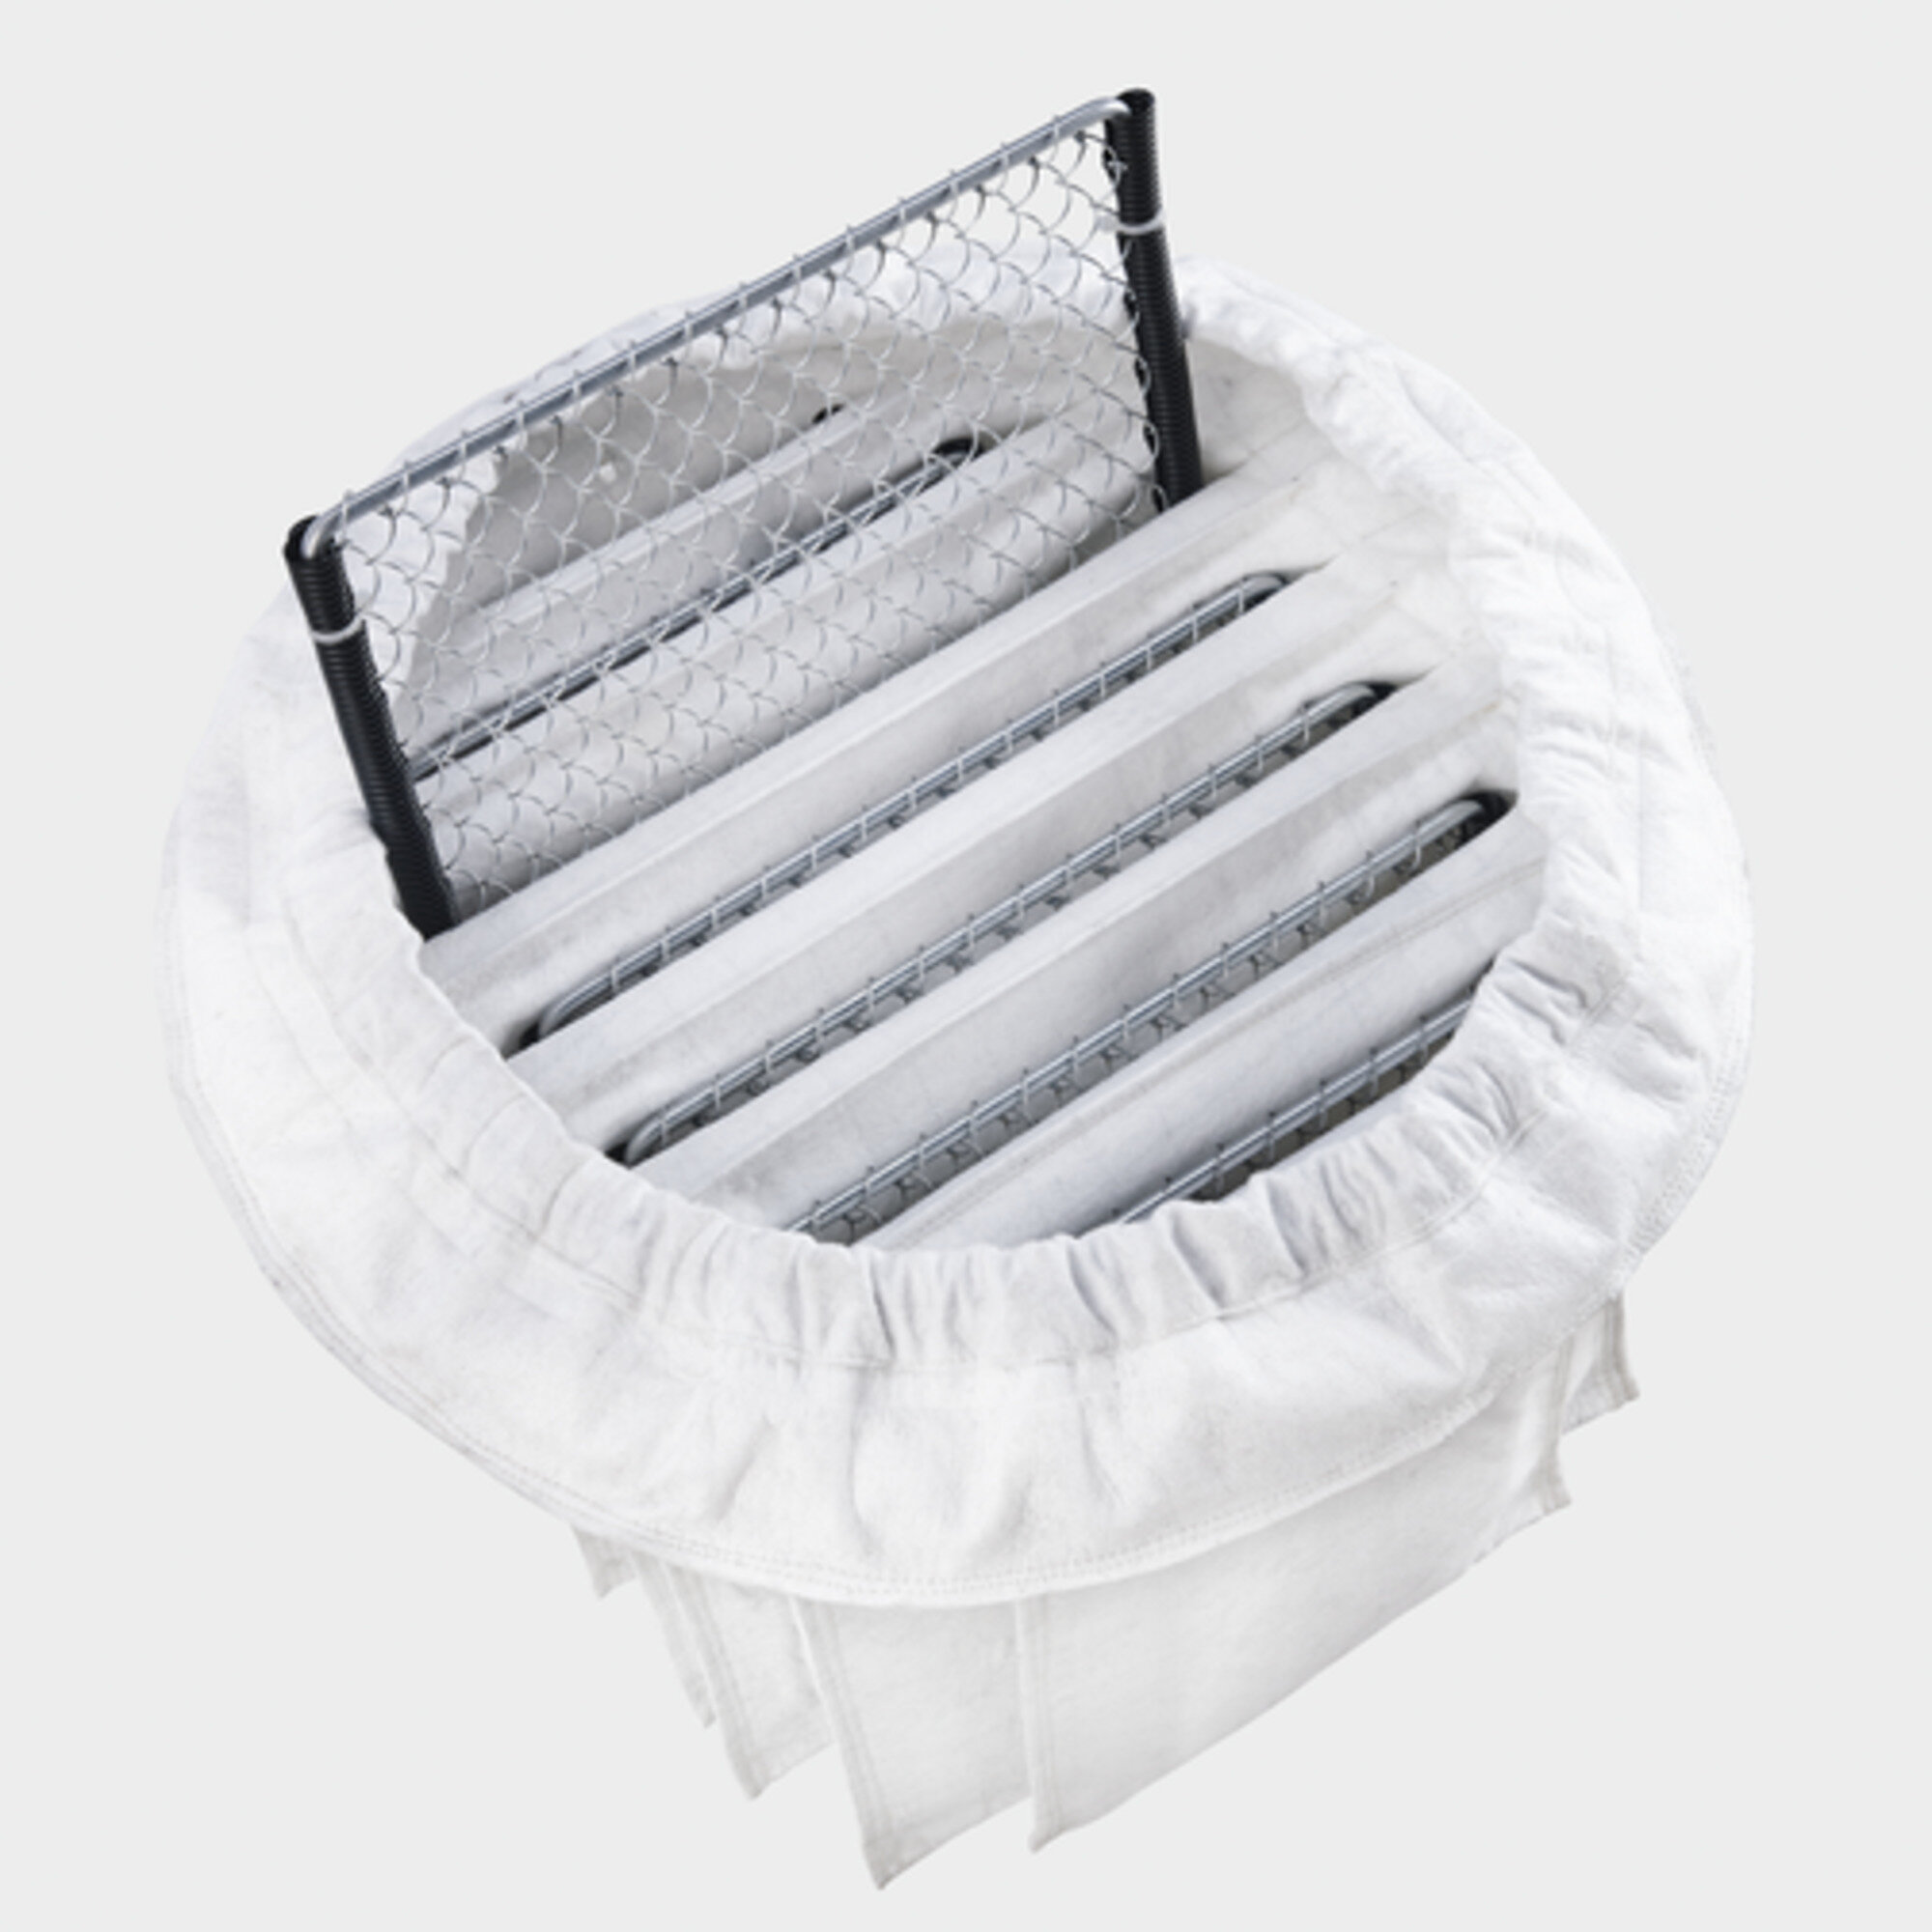  IVR 100/30 Sc: Vzdržljiv in pralen žepkasti filter za konstantno visoko moč sesanja